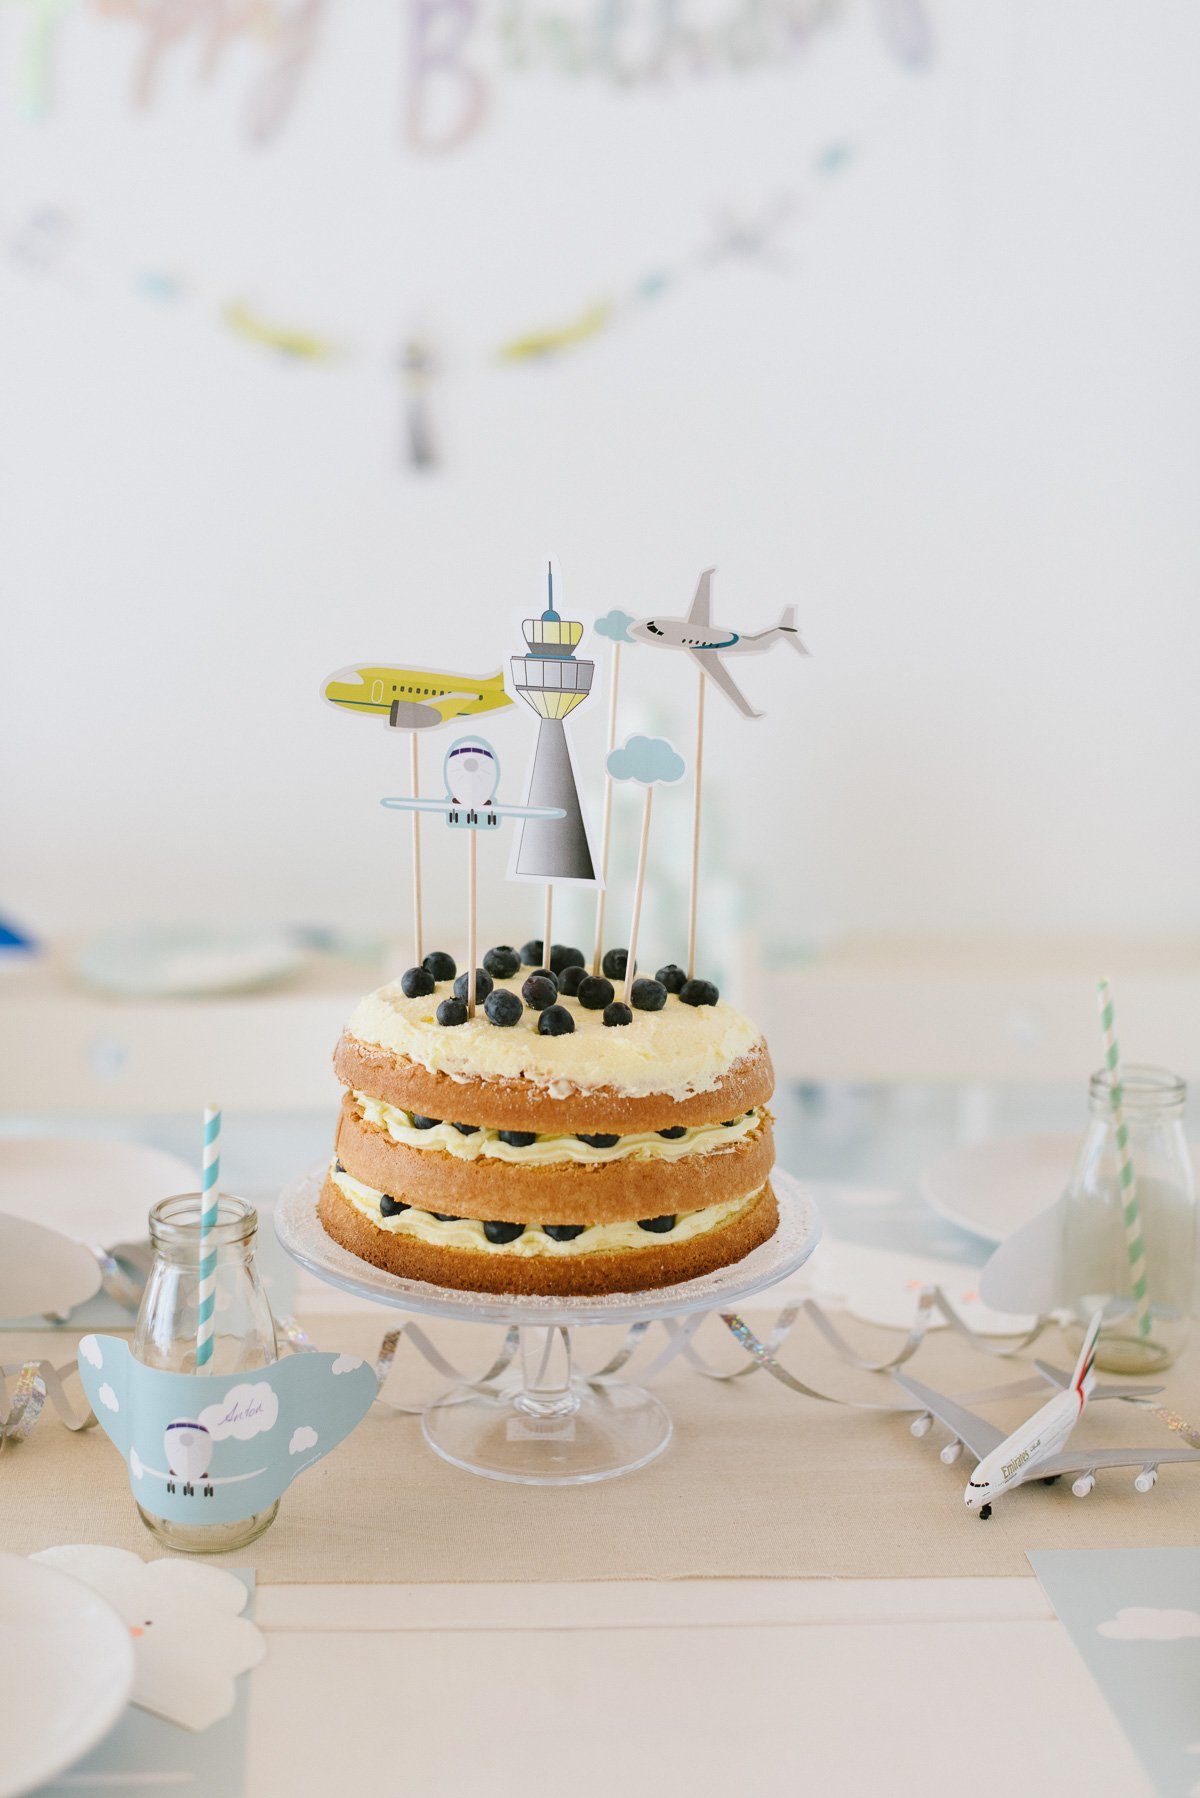 Mit der Fräulein K Flugzeuge Geburtstagsbox können kleine Piloten einen Tag lang ihren großen Traum leben! Feiert fröhliche Flugzeuge Geburtstagsparty!